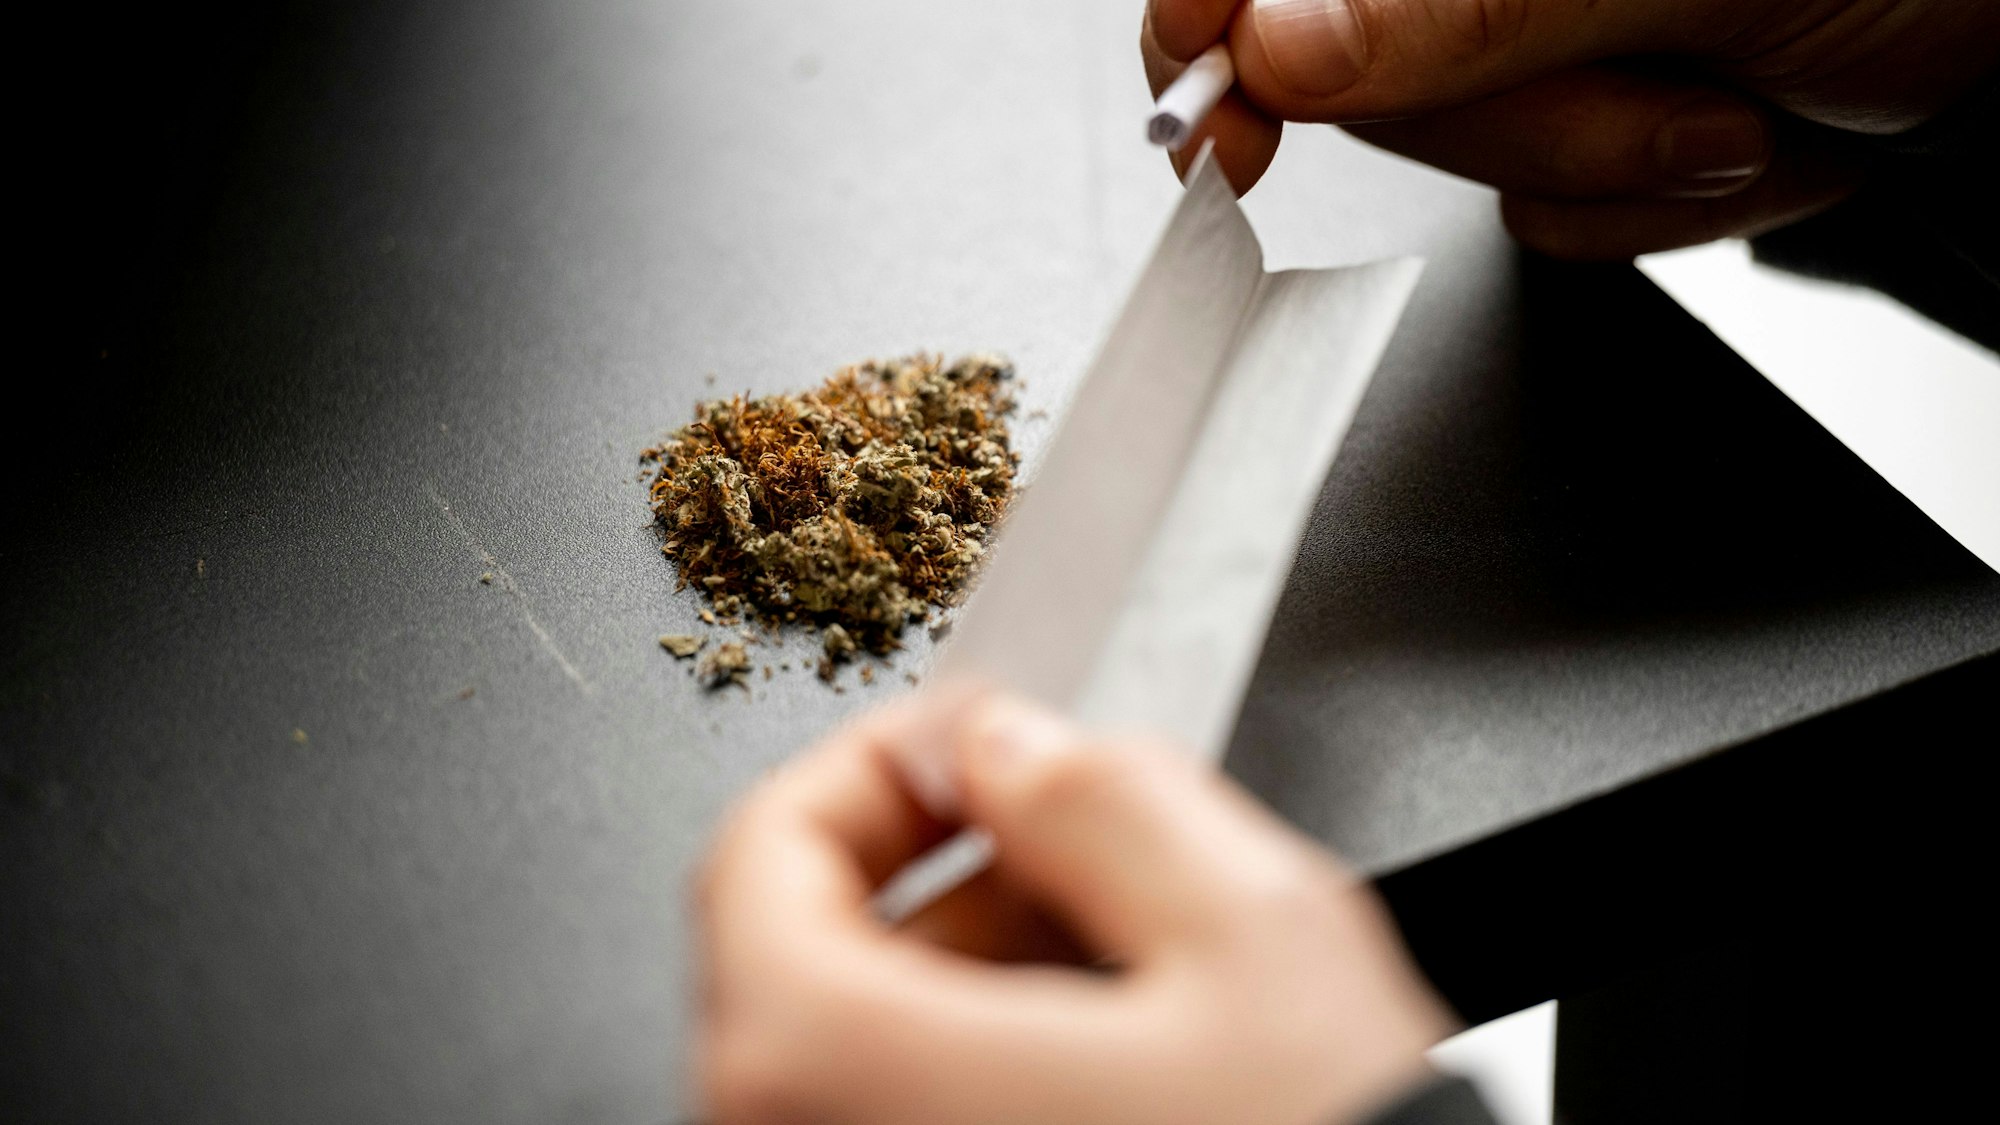 Ein Mann baut einen Joint. Auf der Tischplatte liegt das Marihuana, in den Händen hält der Mann das Papier zum Rollen.